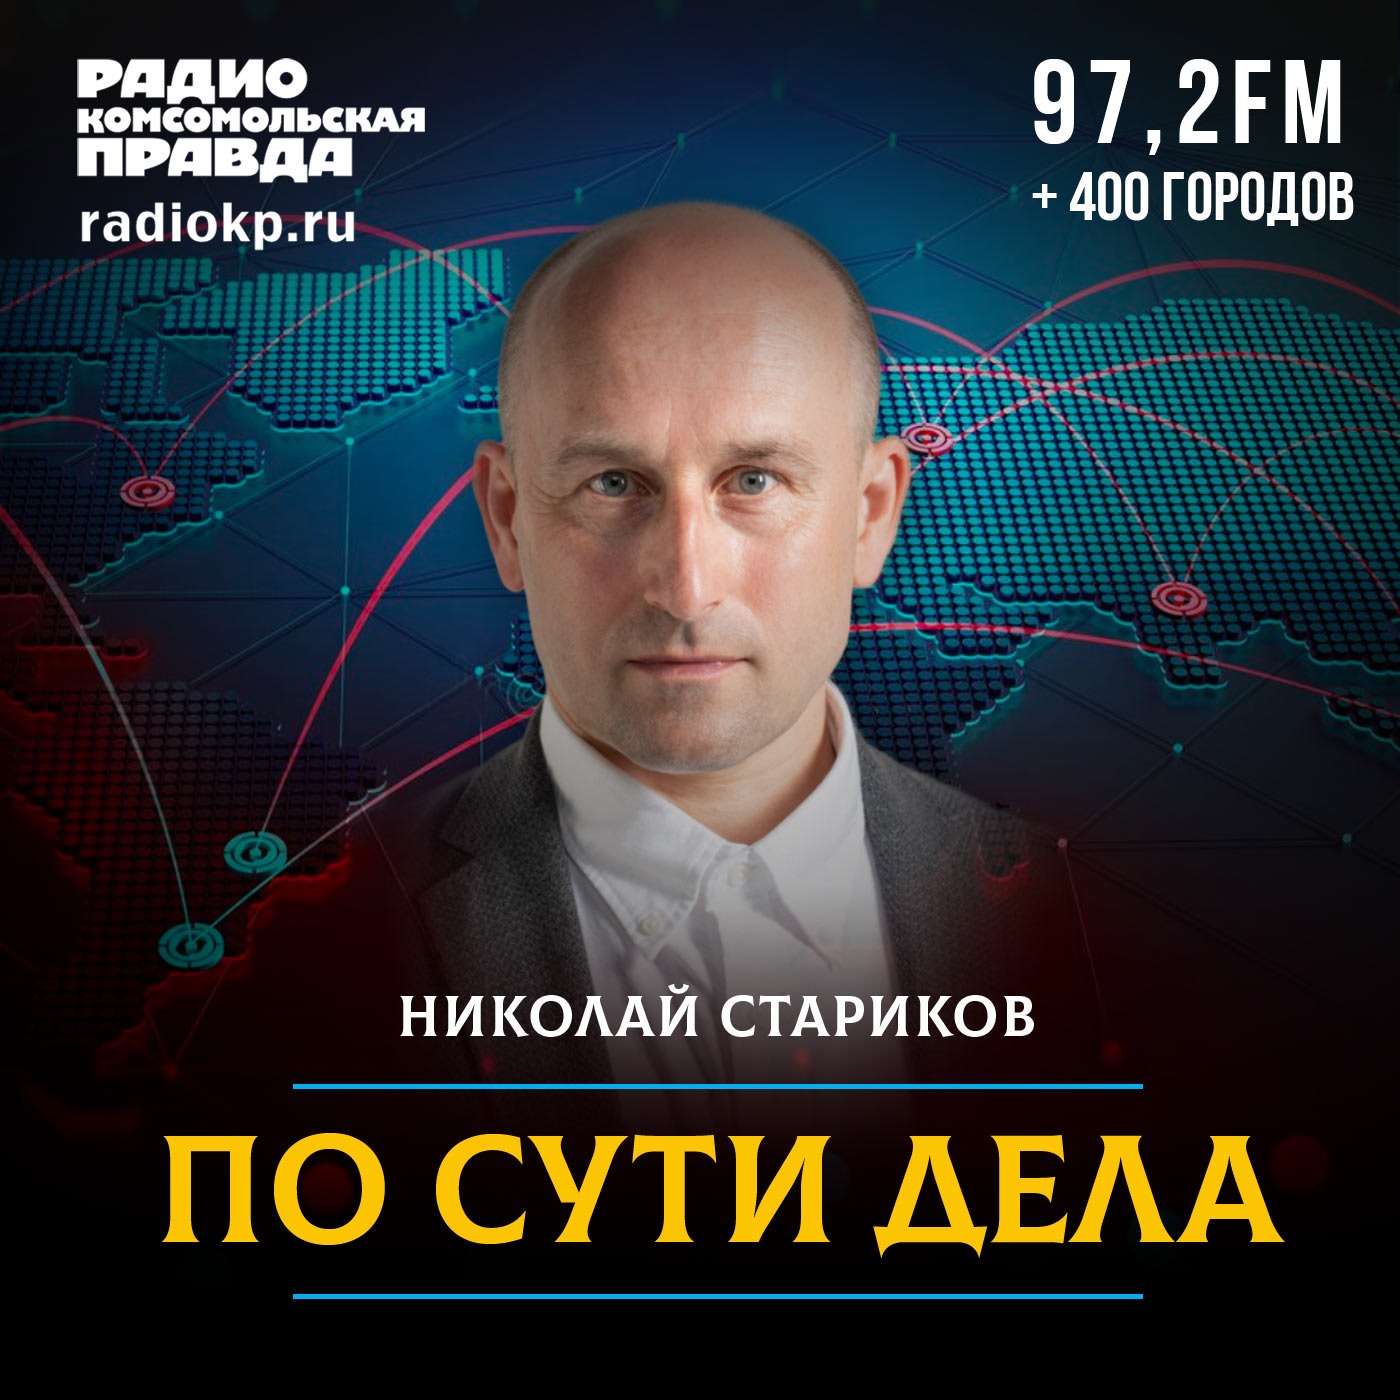 По сути дела. Николай Стариков:Радио «Комсомольская правда»